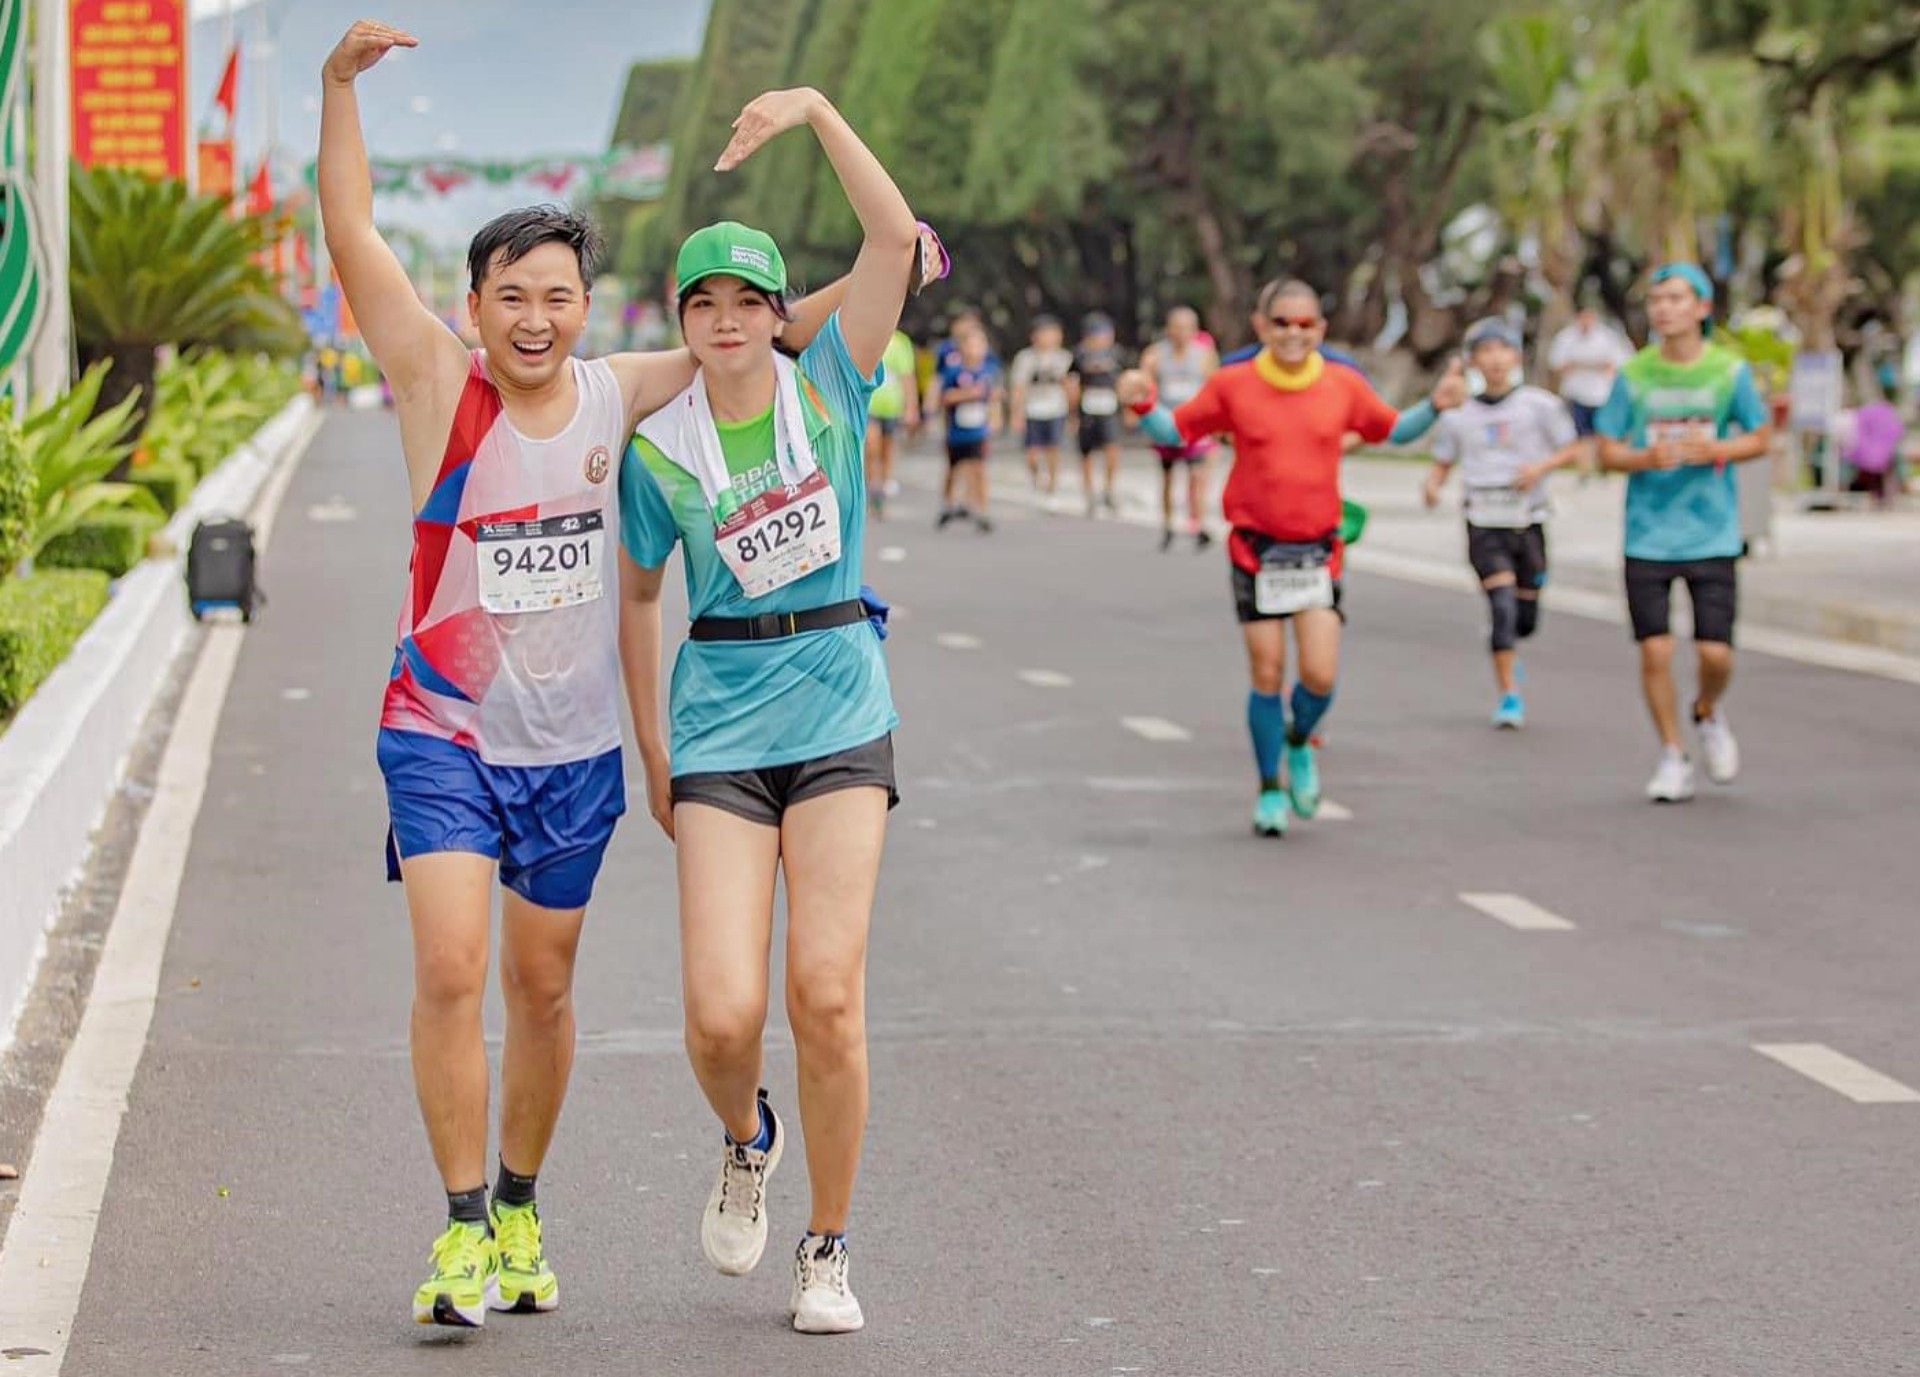 Chú rể Đắk Lắk chạy bộ 31,12km từ 3h sáng đến nhà vợ: cô dâu thở phào khi chồng về đích - ảnh 2